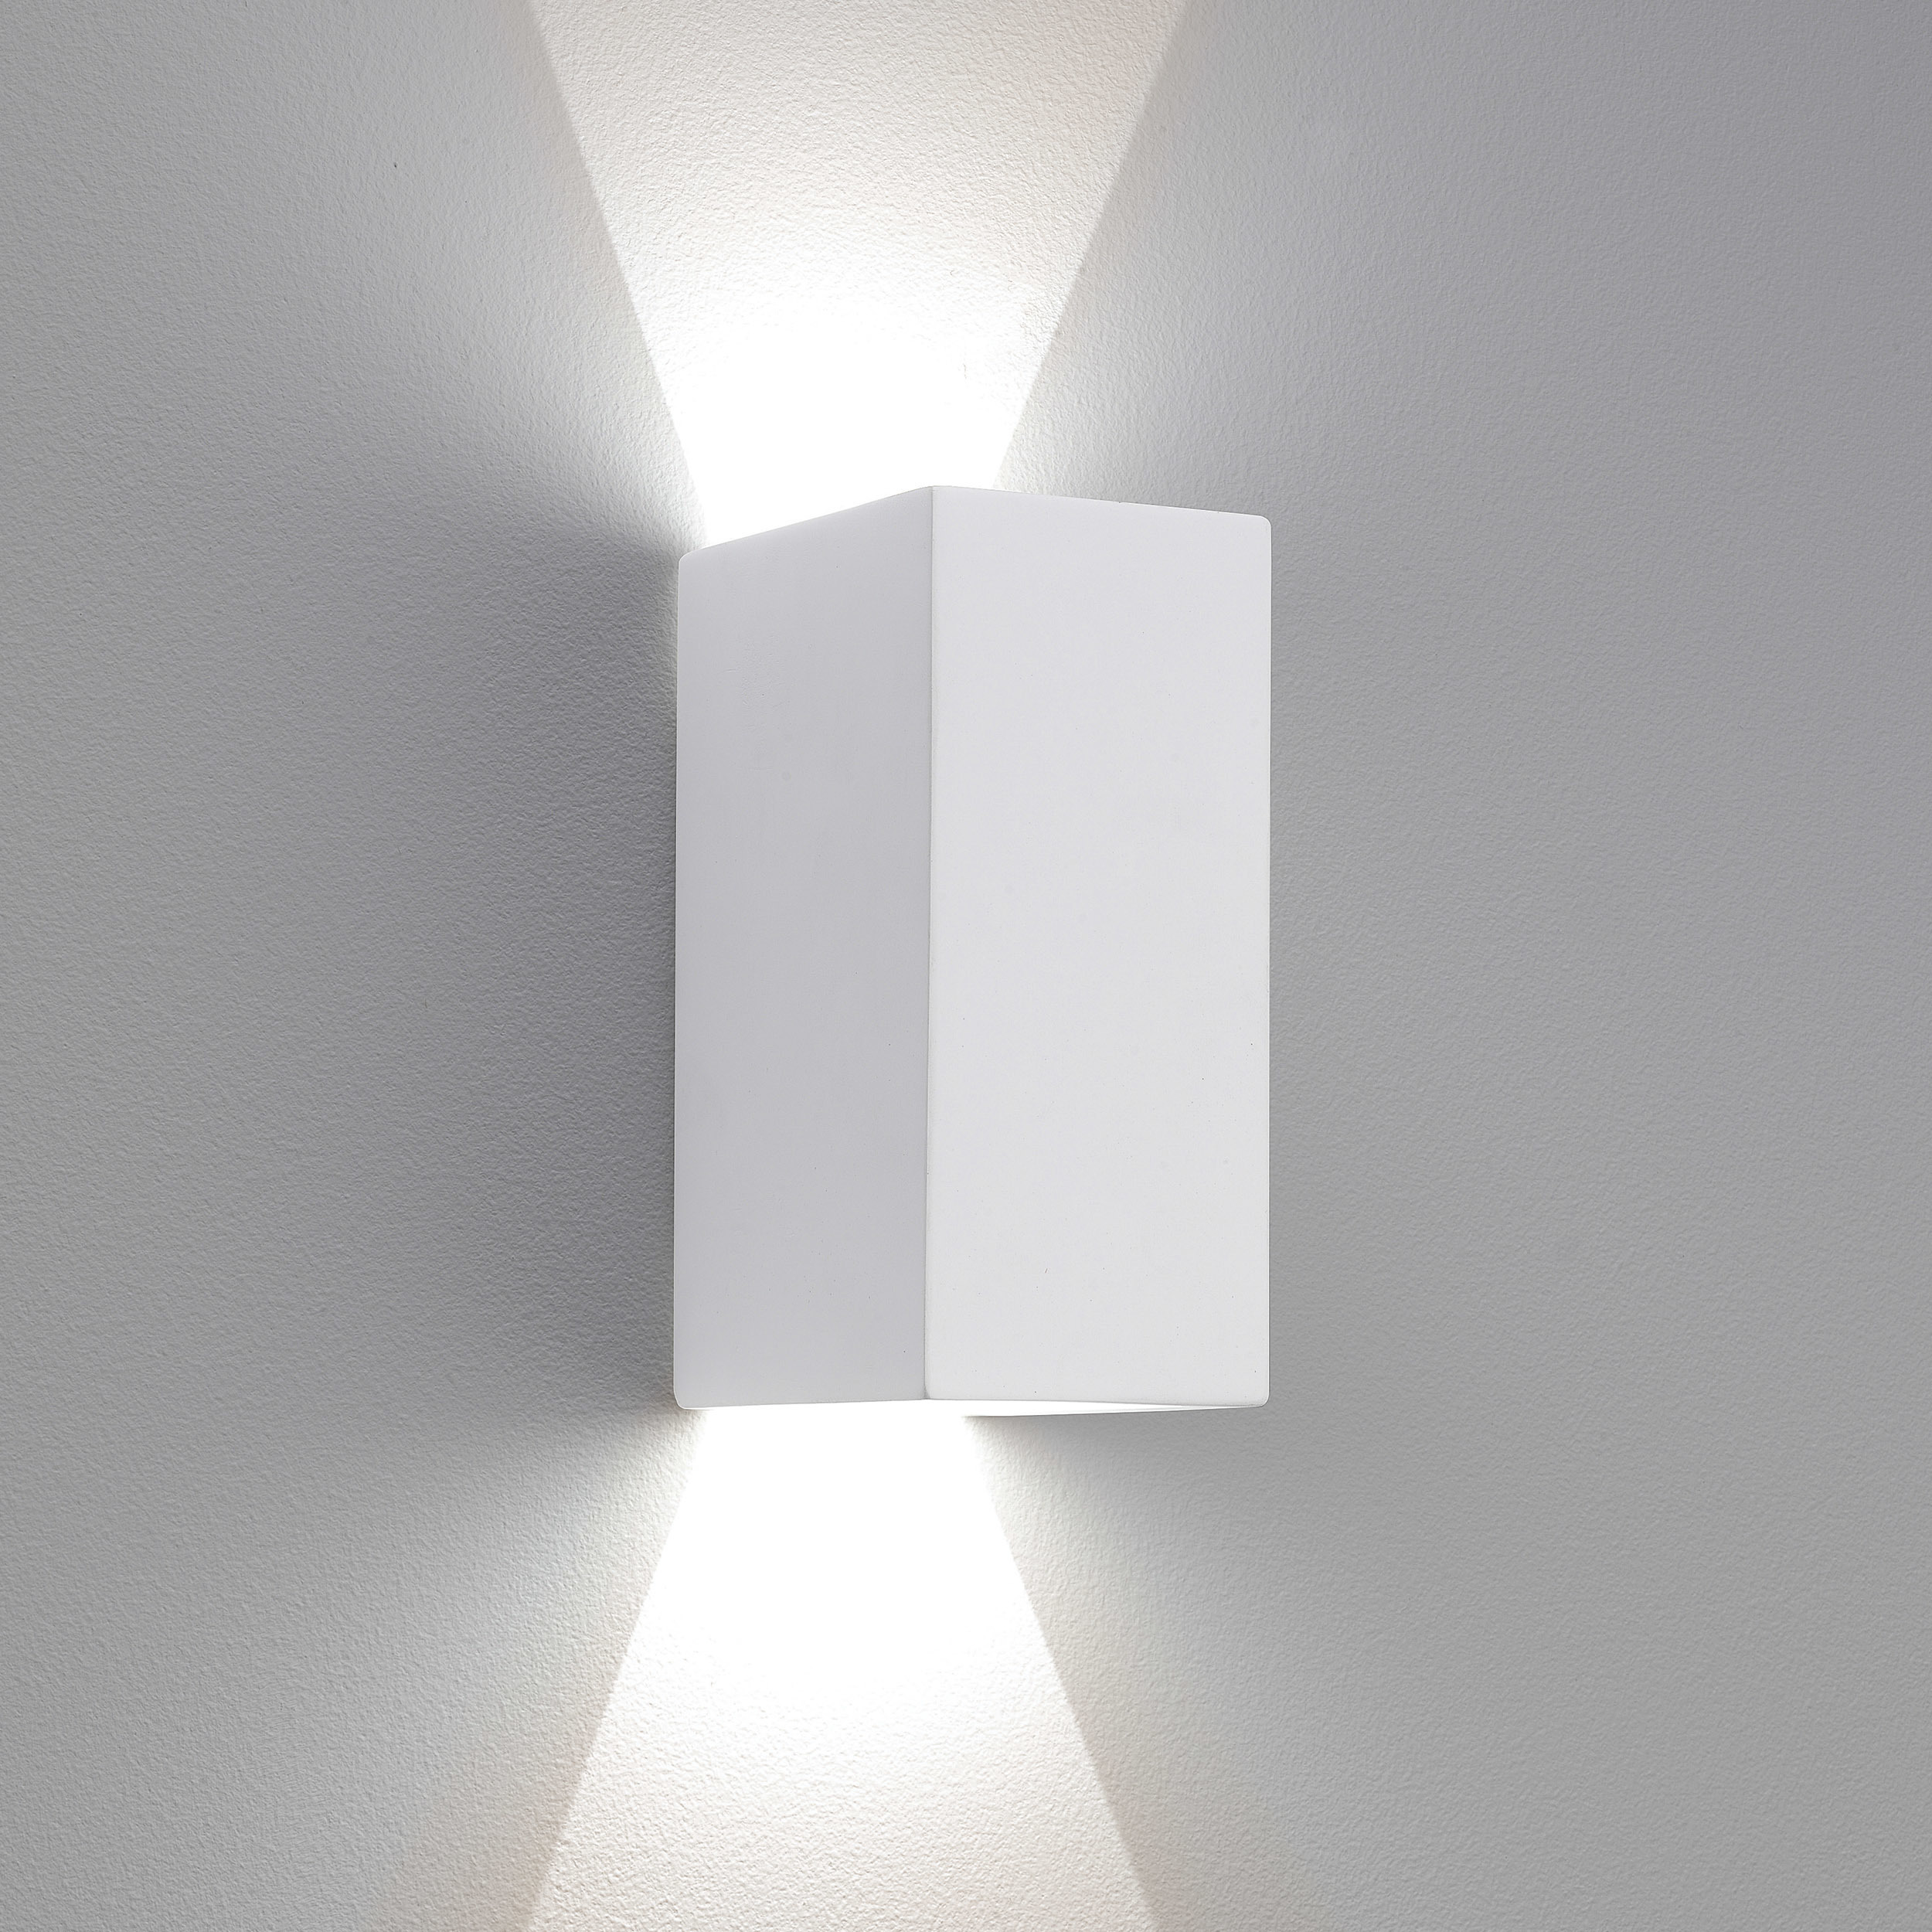 Настенный светодиодный светильник Astro Parma 1187014 (7598), LED 6,4W 2700K 154.59lm CRI80, белый, под покраску, гипс - фото 1